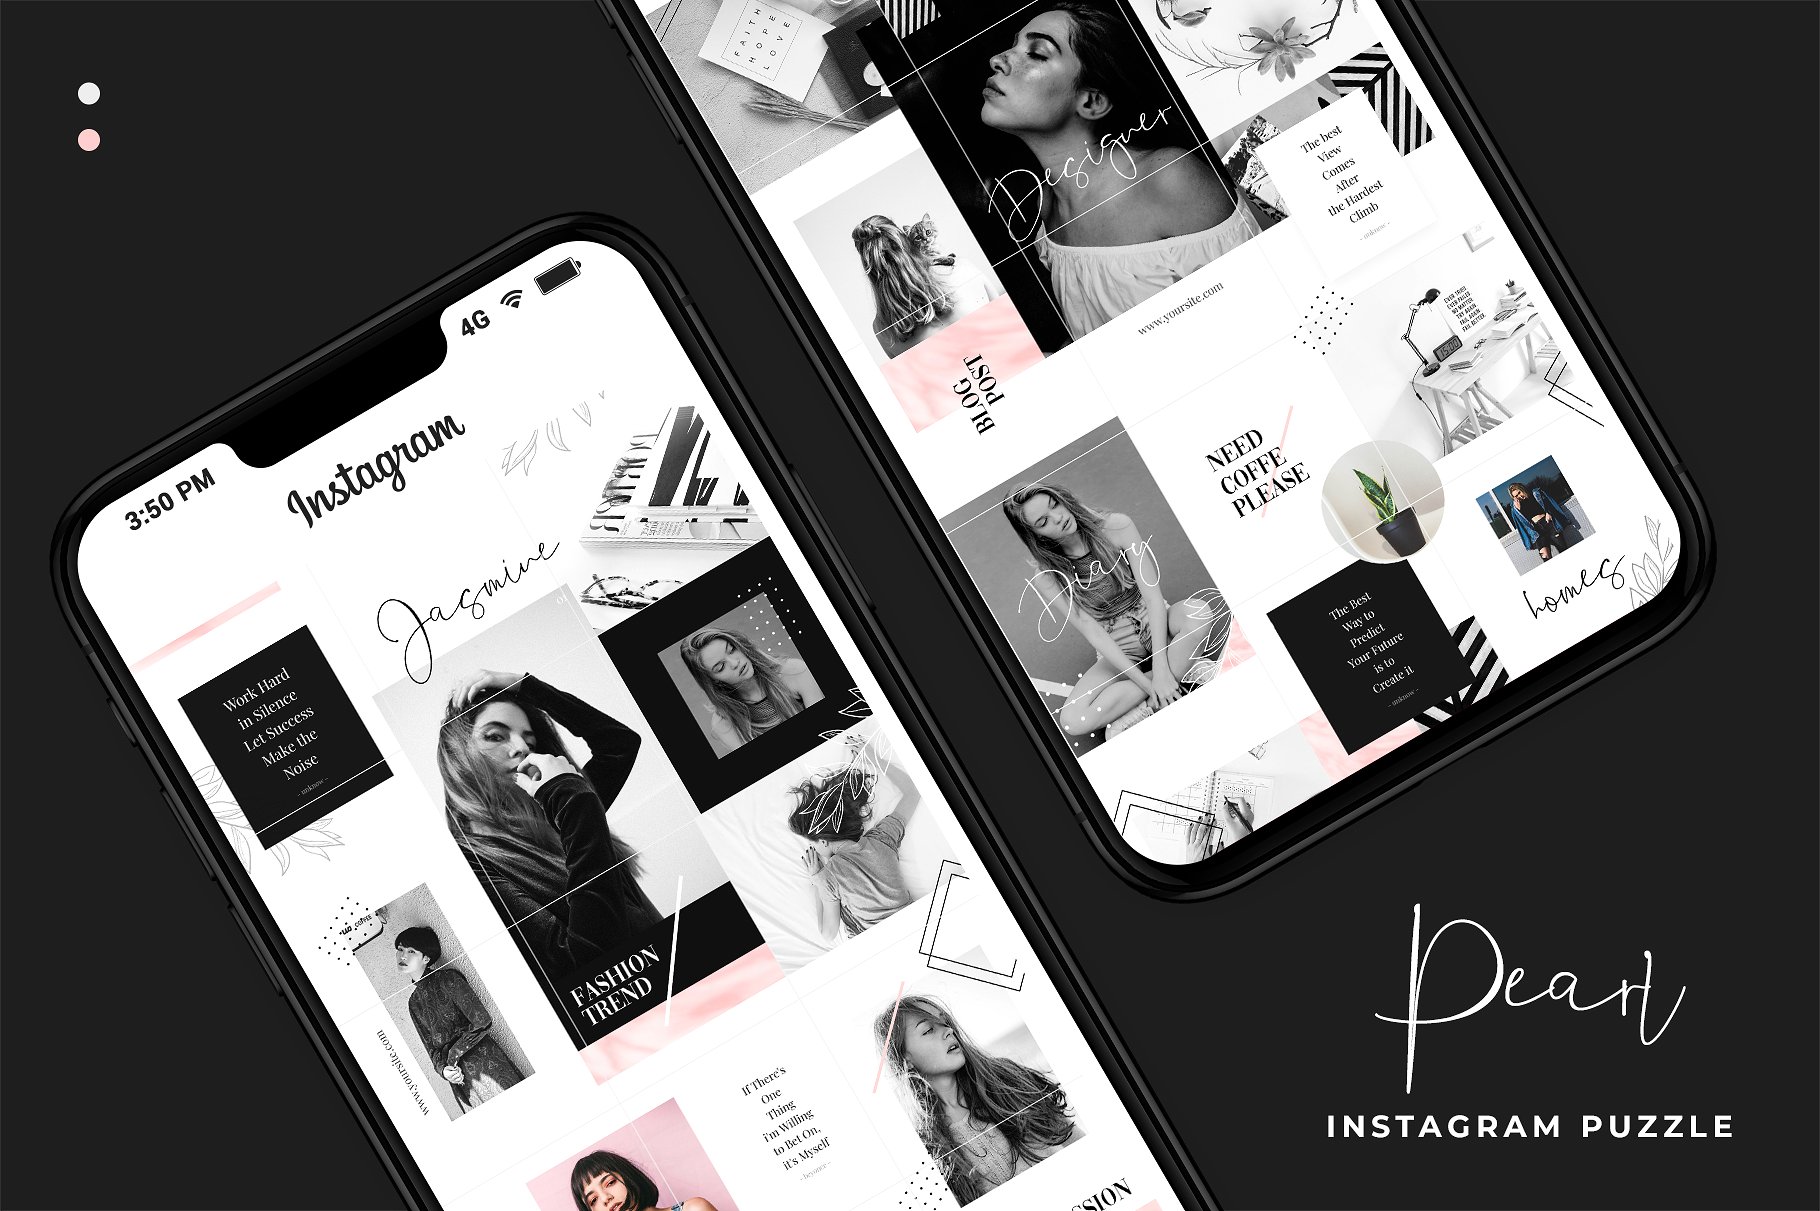 现代黑色主题的instagram社交媒体模板第一素材精选 Instagram Puzzle – Pearl [psd]插图(4)